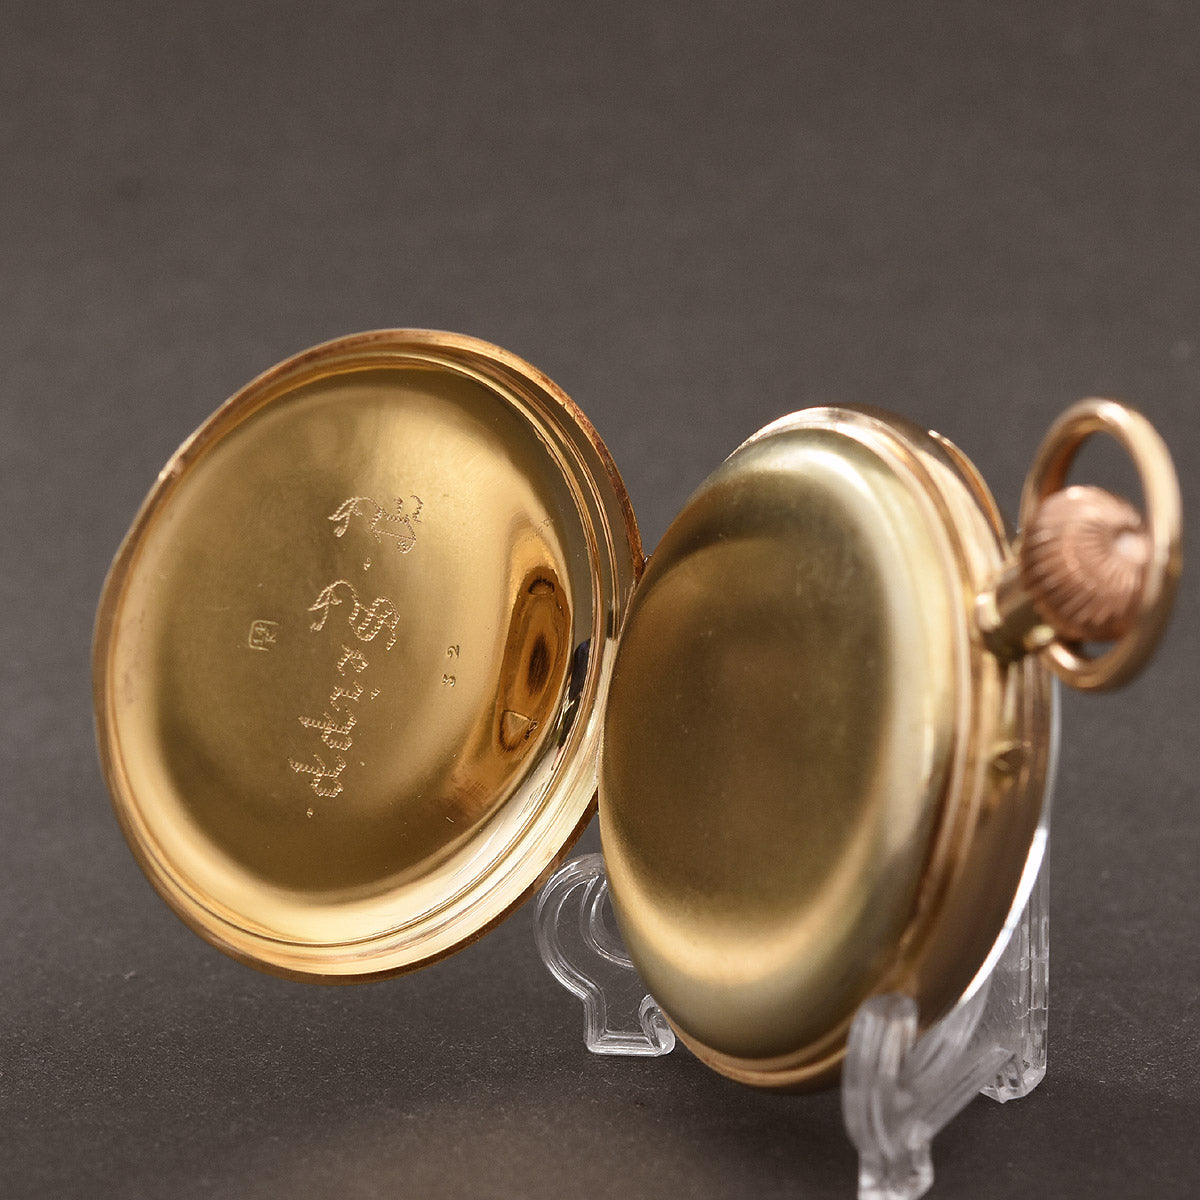 1900s SWISS Hi-grade 14K Gold Open Face Pocket Watch